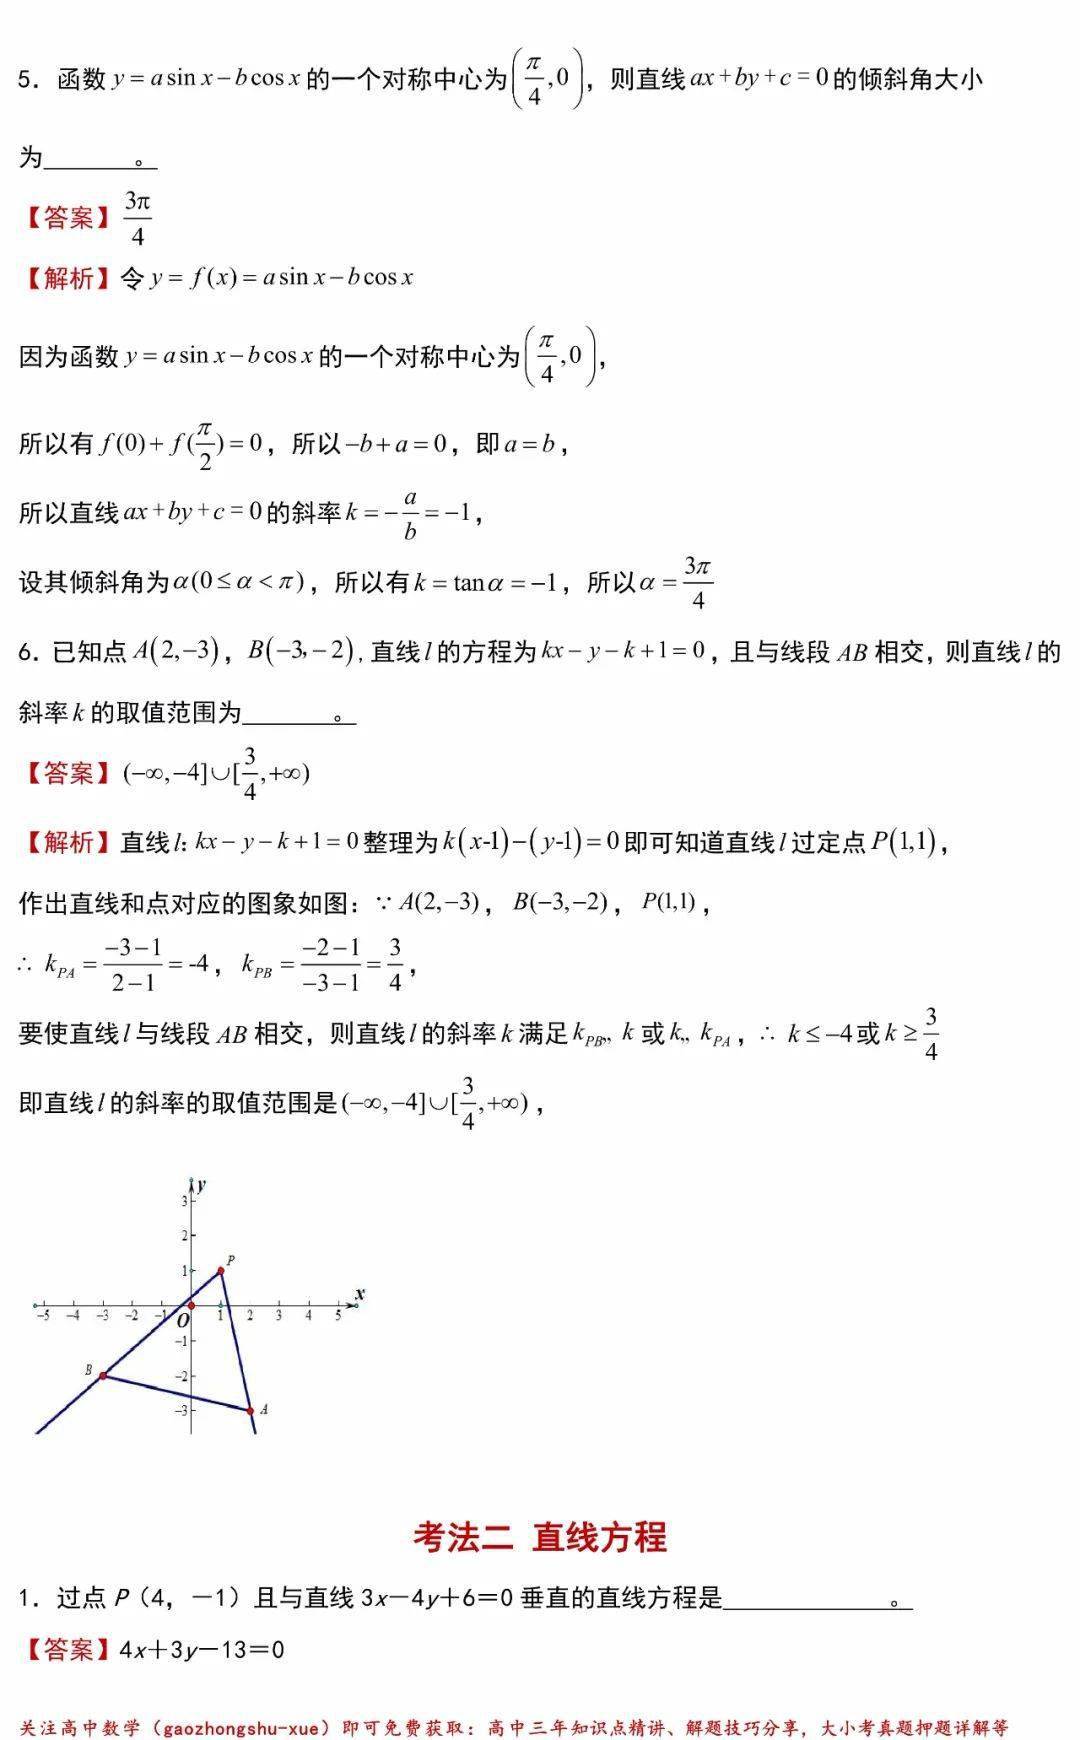 高中数学解析几何基础 圆与直线方程 干货与题型全汇总 问题